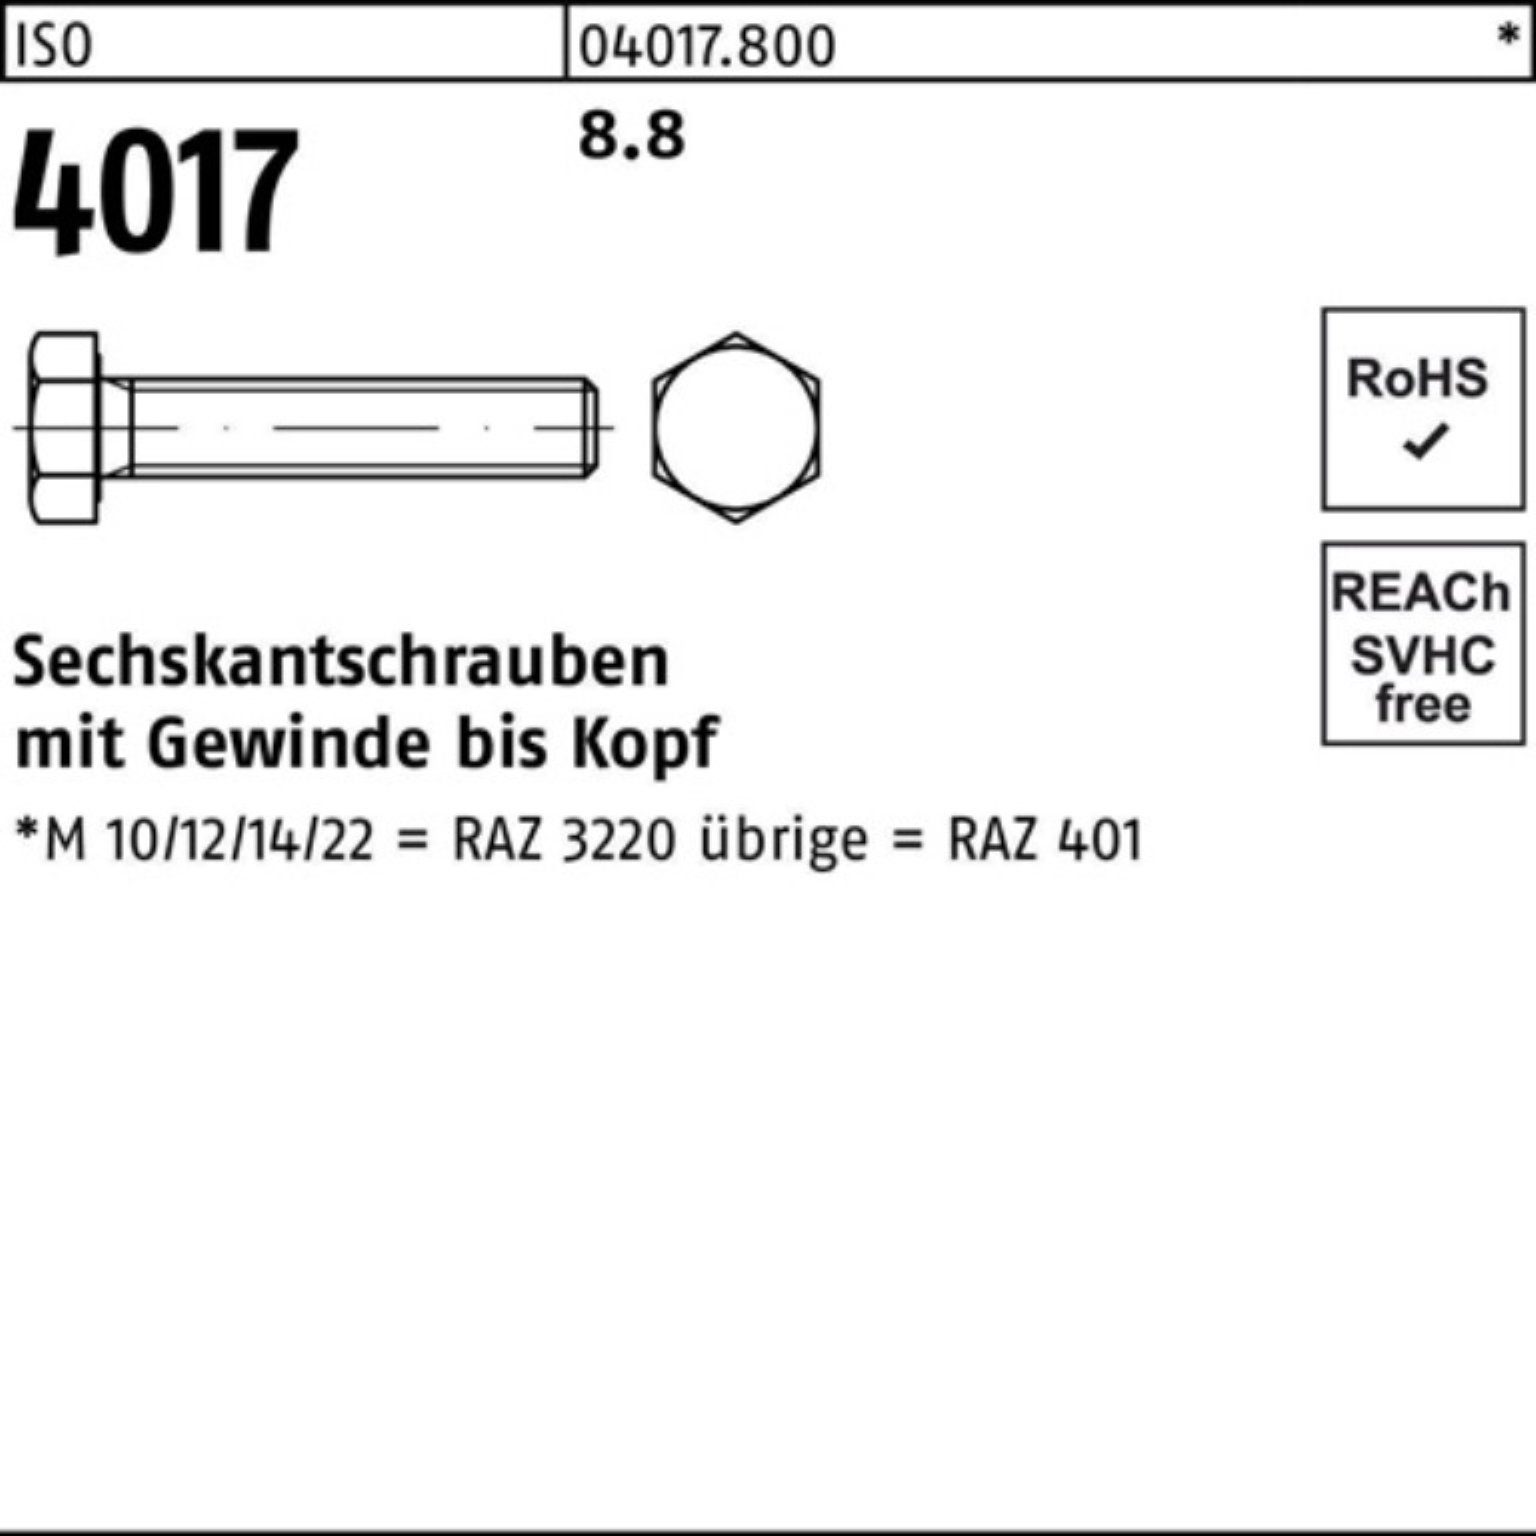 VG 100er 40 ISO Sechskantschraube M16x Pack 4017 25 Sechskantschraube 150 8.8 Bufab Stück ISO